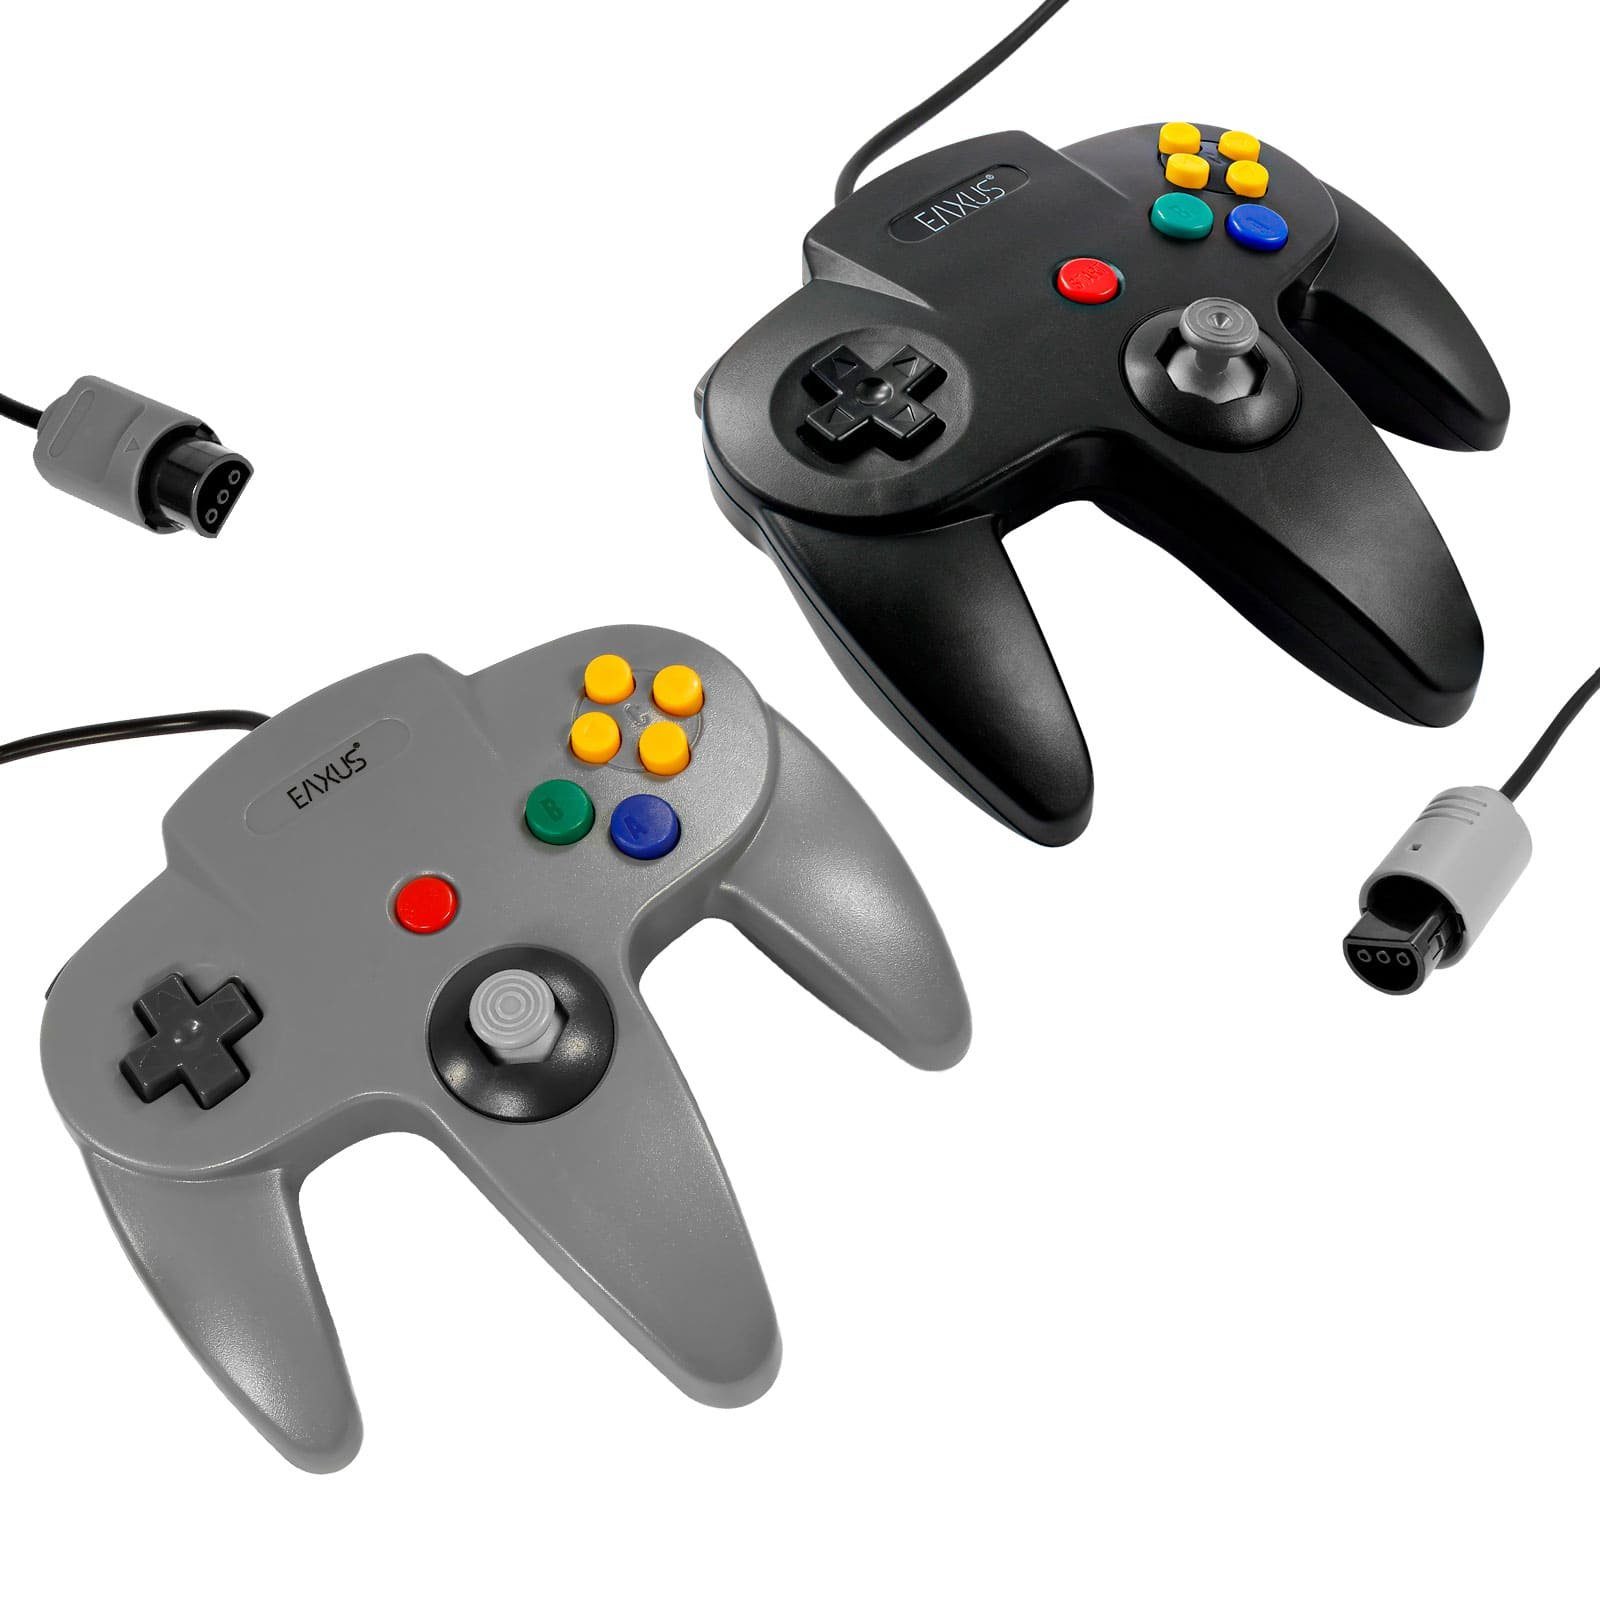 EAXUS Gamepad für Schwarz, Schwarz/Grau für Grau 1x 64 1x Controller (1 Nintendo N64) in St